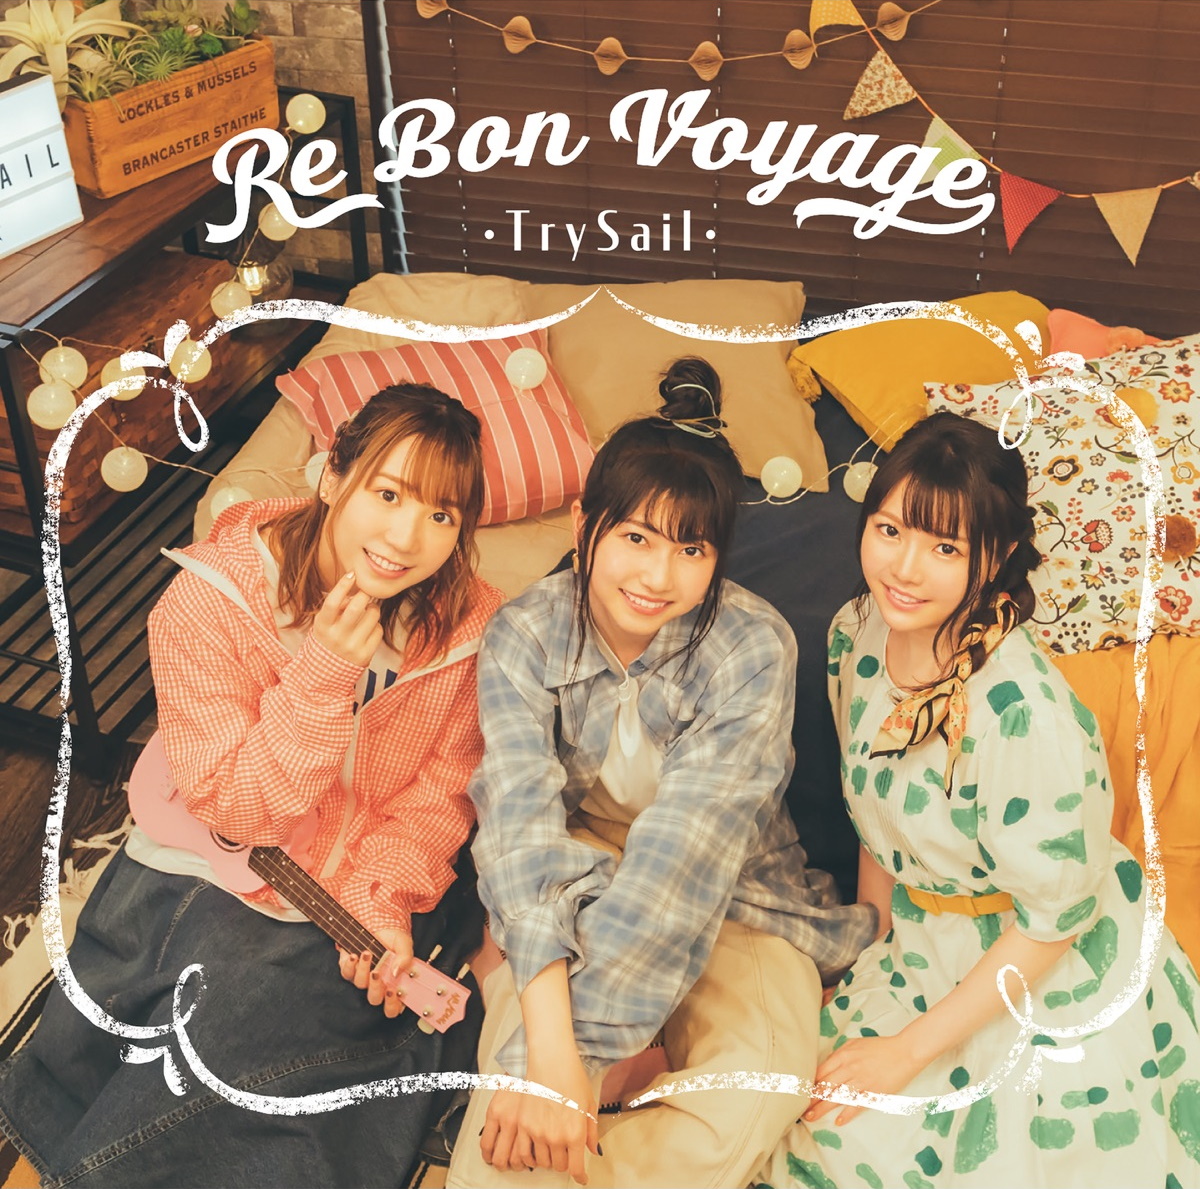 『TrySail - マイハートリバイバル』収録の『Re Bon Voyage』ジャケット